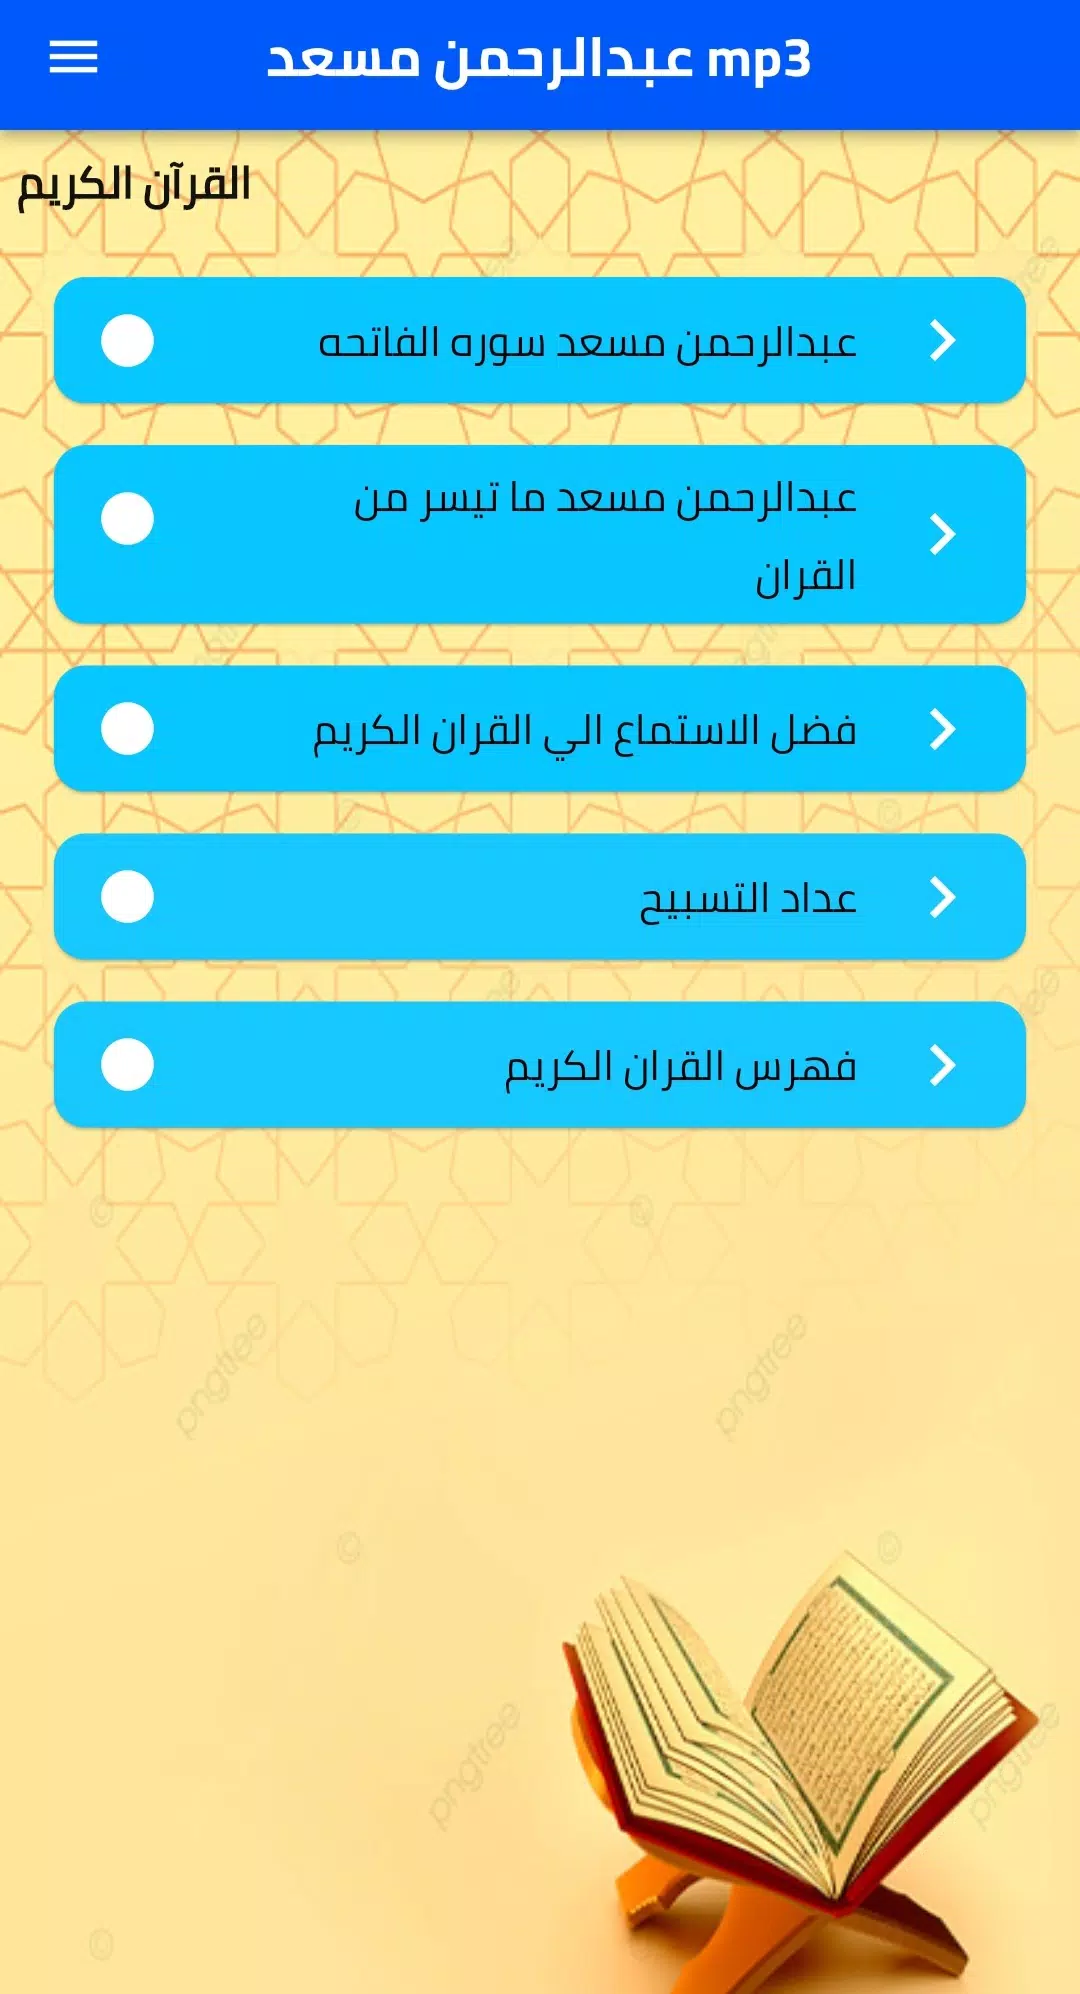 عبد الرحمن مسعد mp3 APK for Android Download